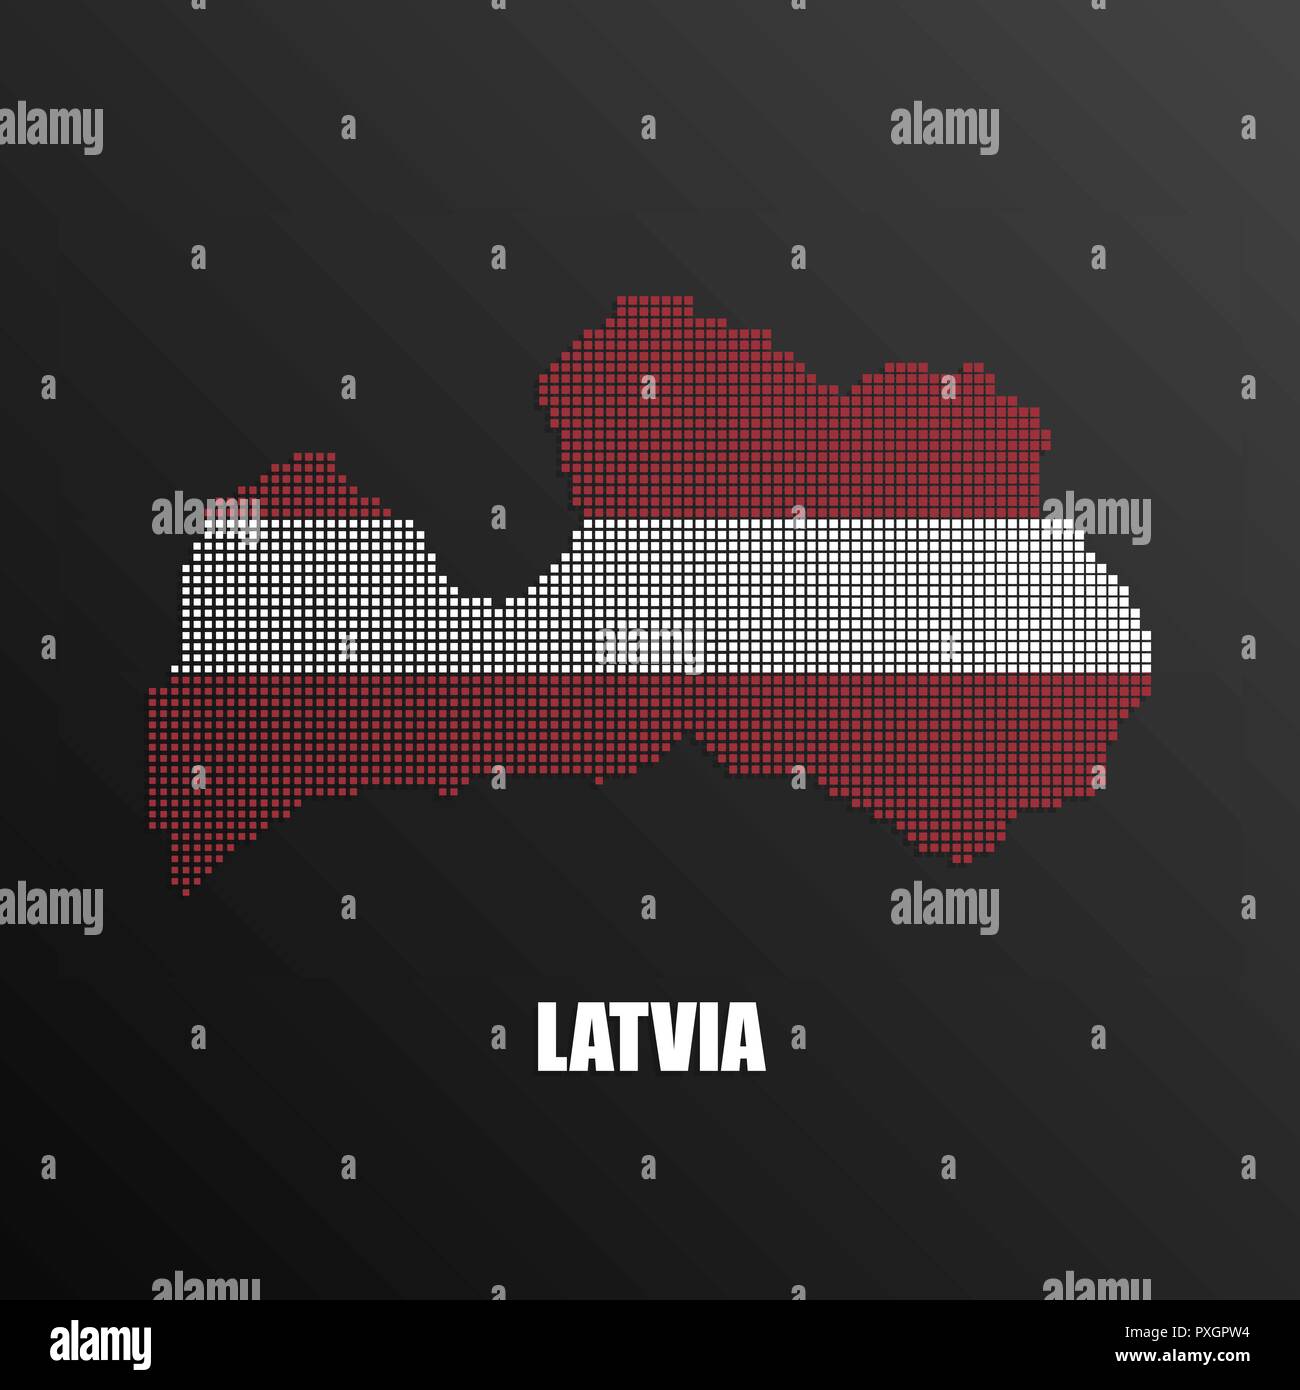 Illustrazione Vettoriale di mezzitoni astratta mappa della Lettonia fatta di pixel quadrati con nazionale lettone di colori di bandiera per la tua progettazione grafica e web Illustrazione Vettoriale